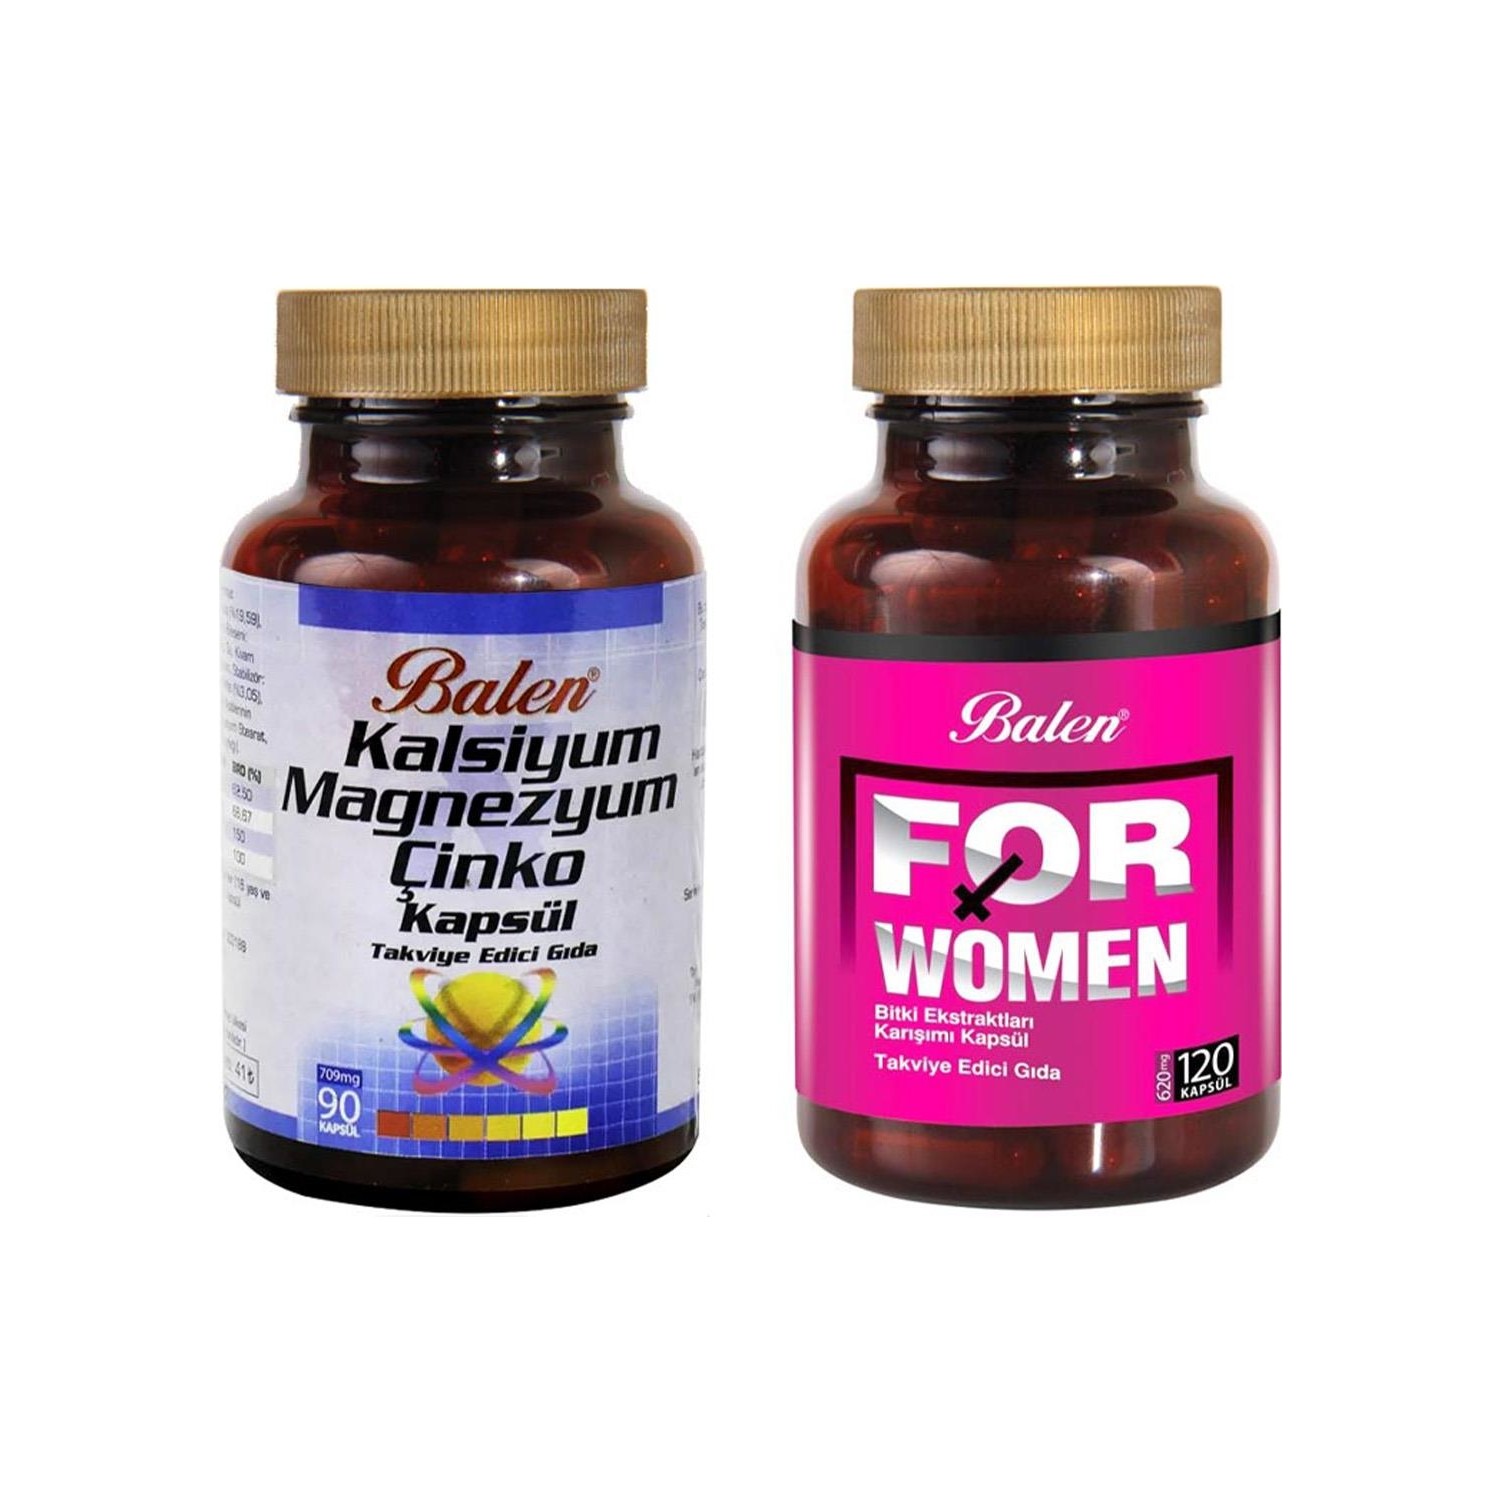 Активная добавка Balen For Woman, 120 капсул, 500 мг + Витаминный комплекс Balen Calcium Magnesium Zinc, 90 капсул, 709 мг nugenix мака 500 мг 90 капсул